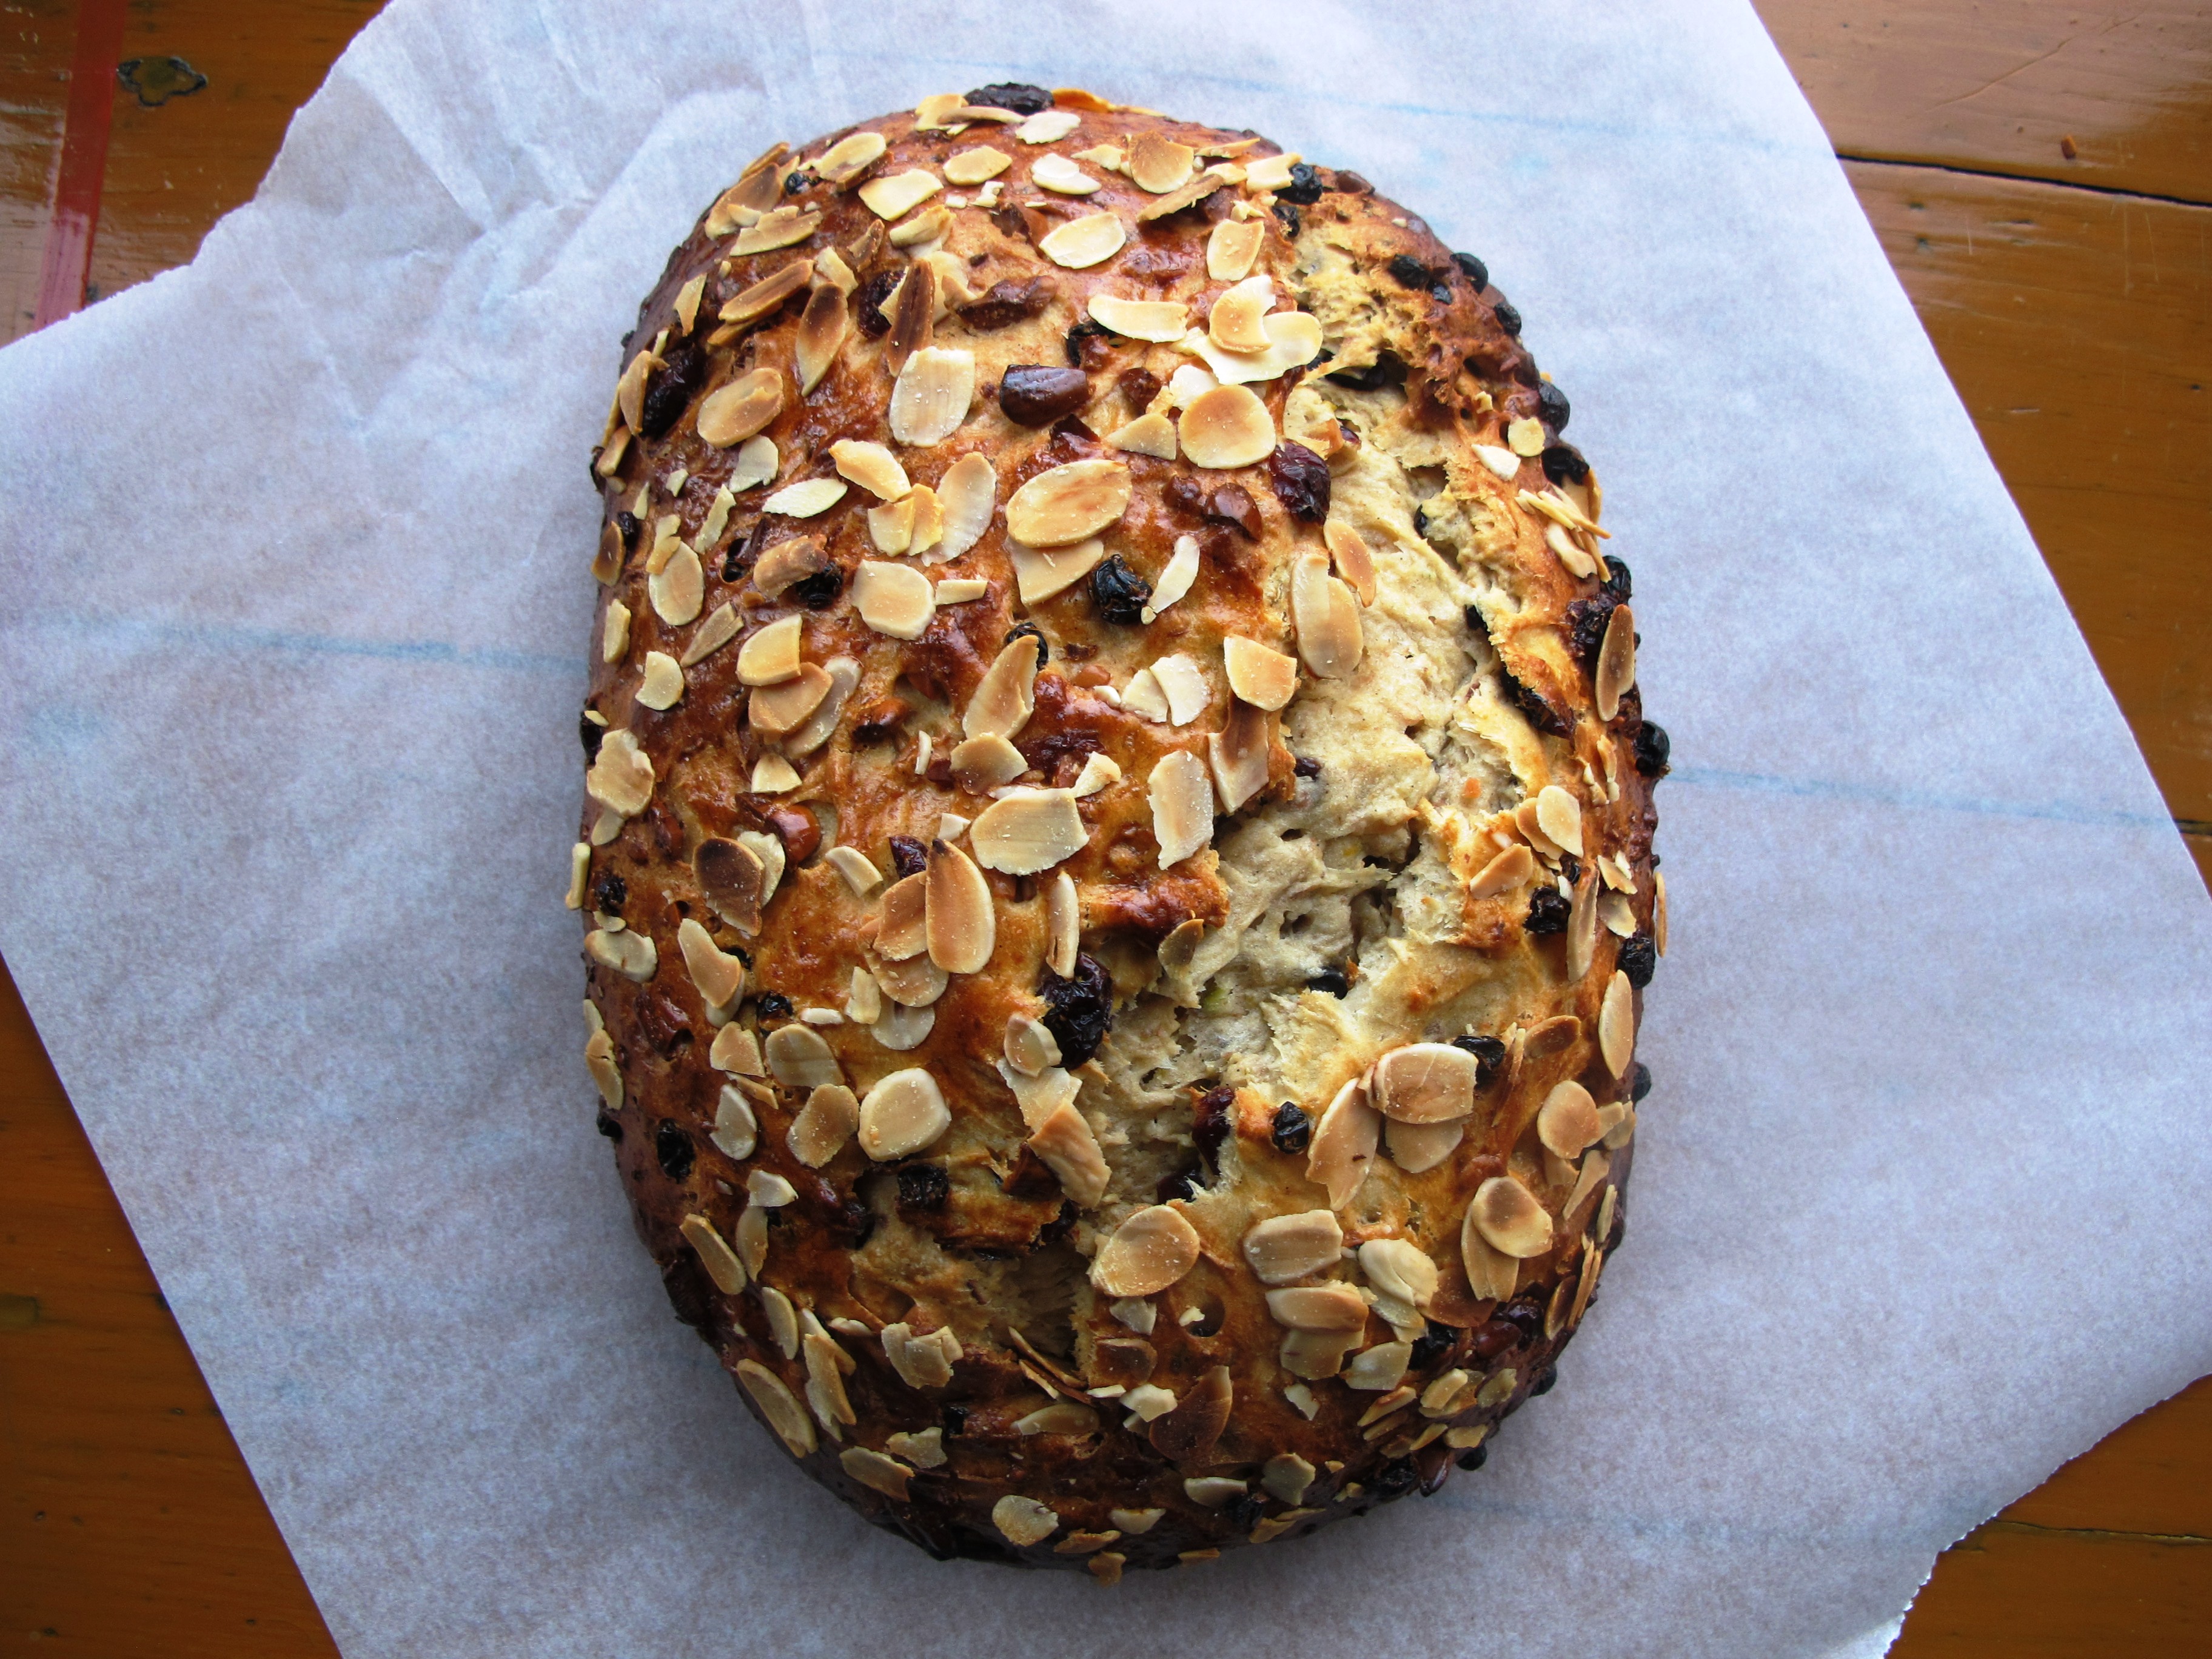 Sourdough Stollen Recipe (German Christmas Stollen) - The Bread She Bakes